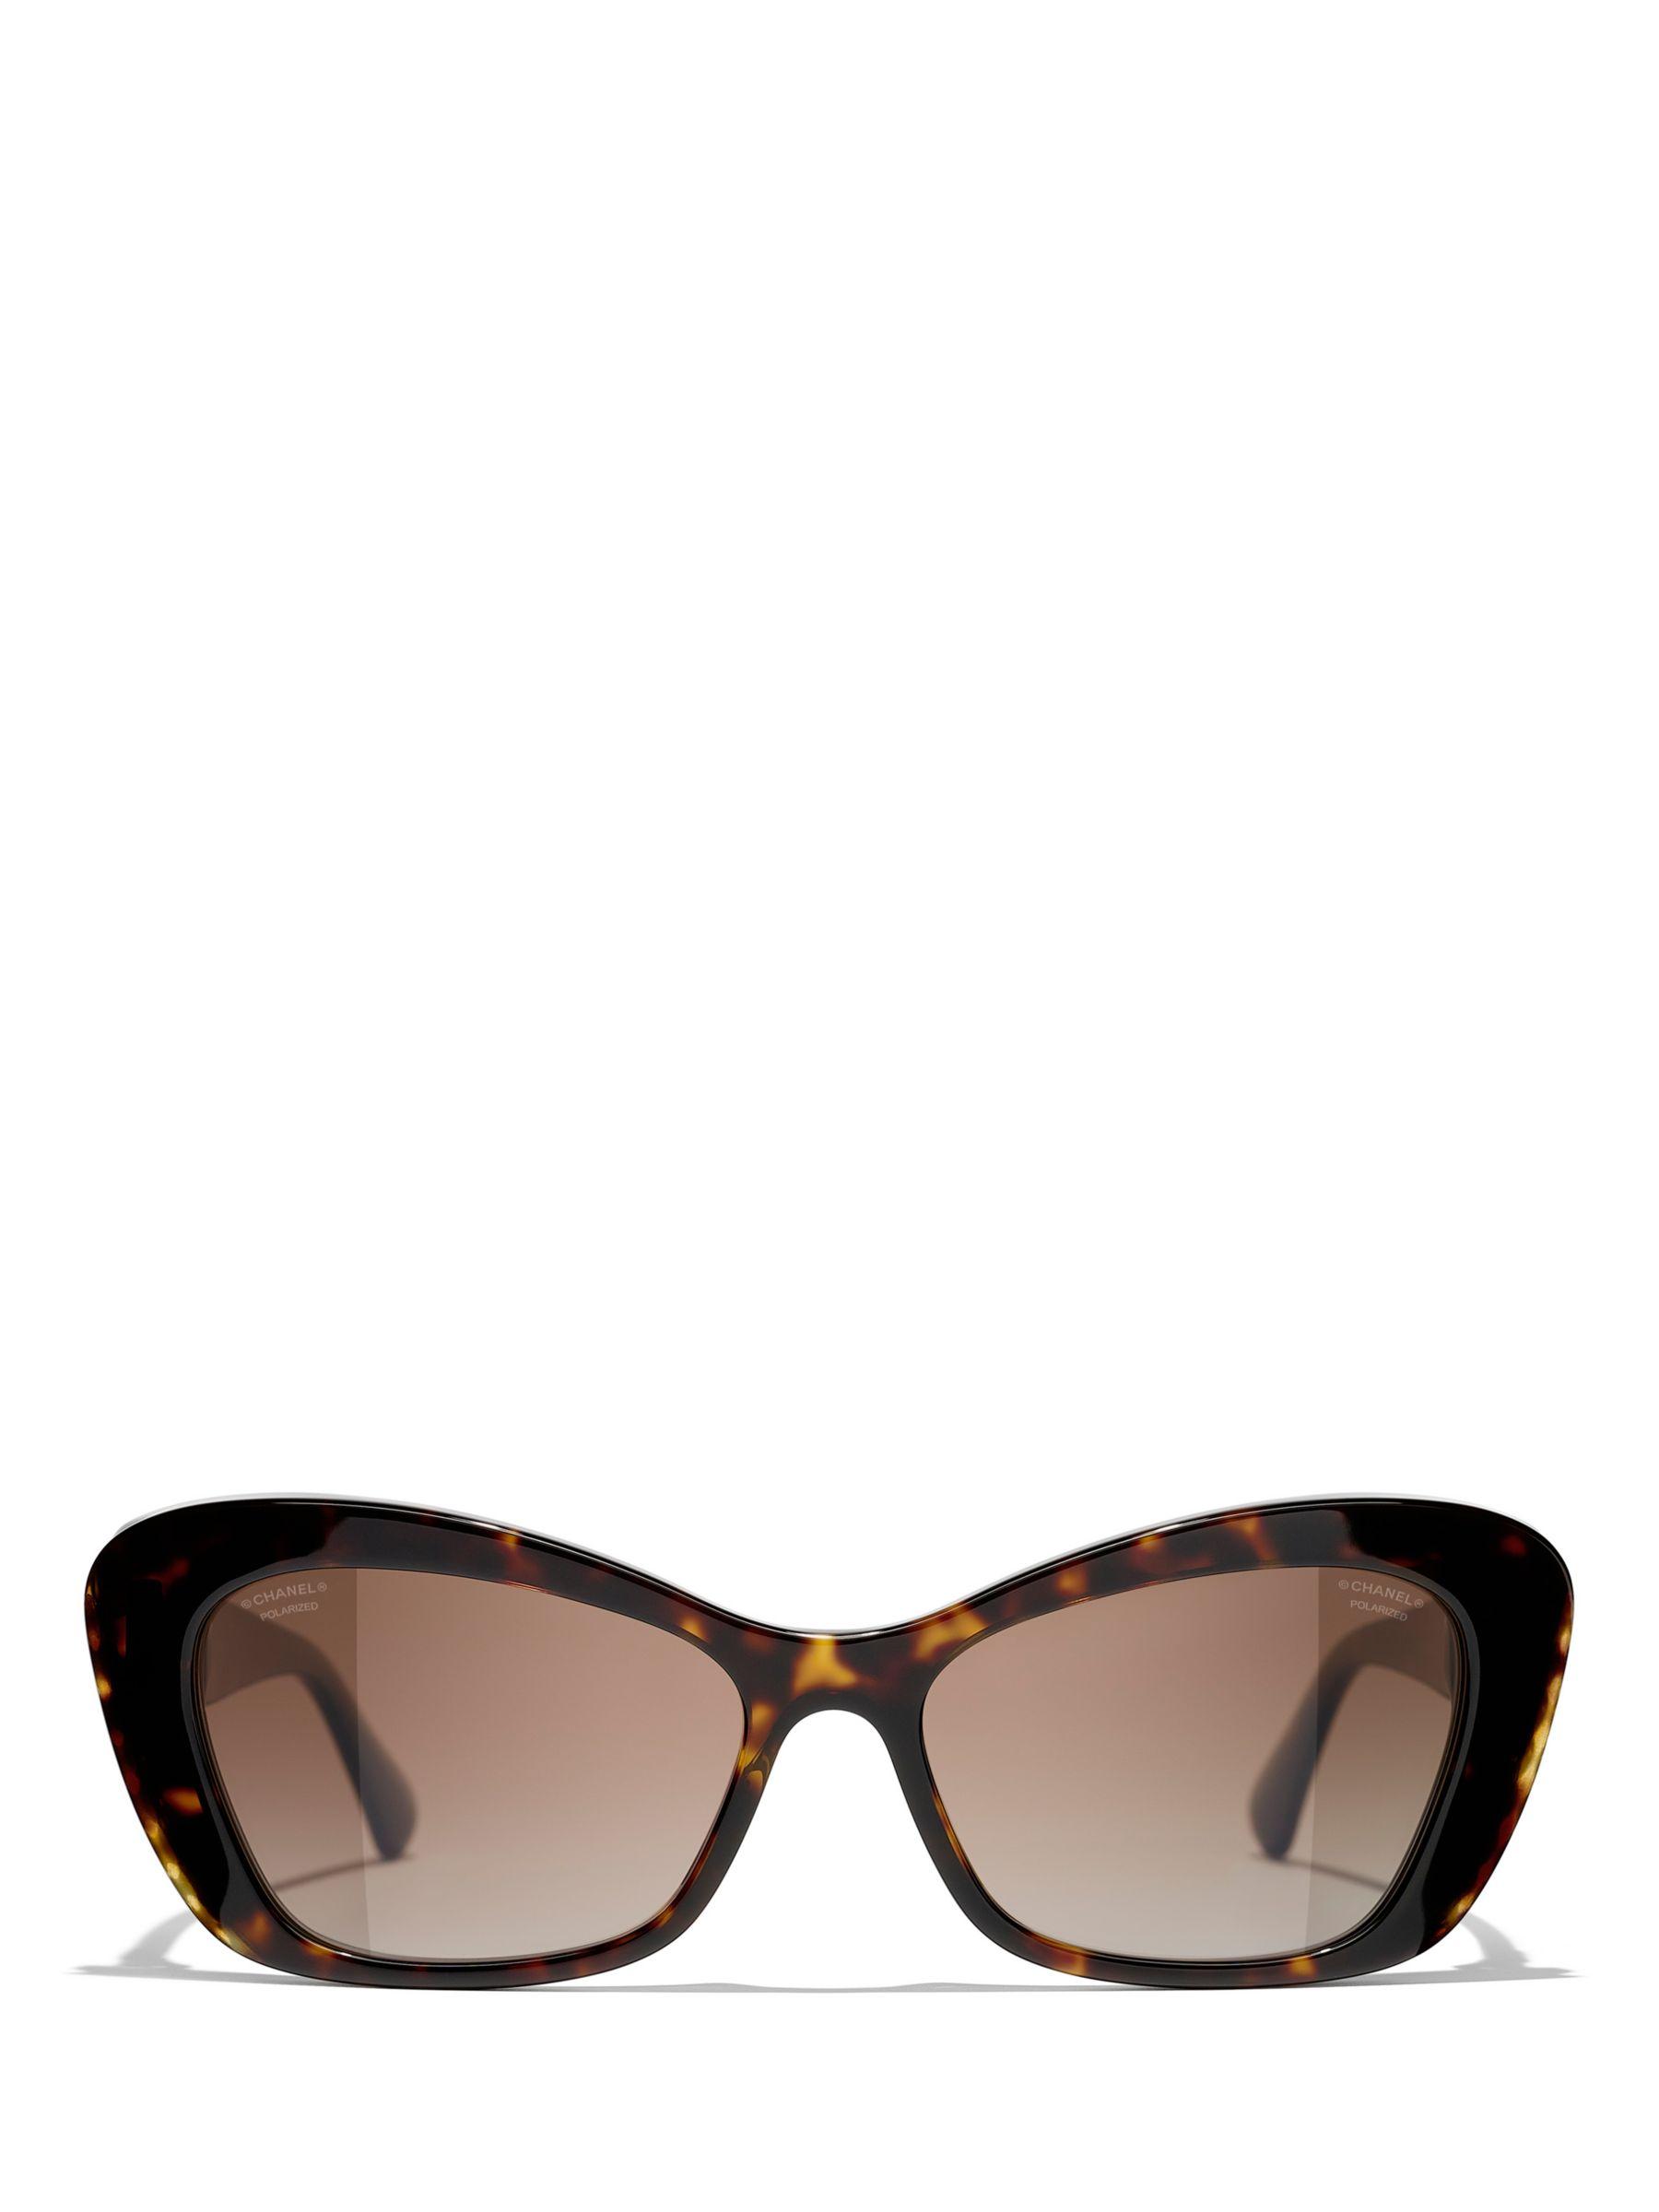 Chanel Butterfly Sunglasses Ch5481h Dark Havana/brown Gradient